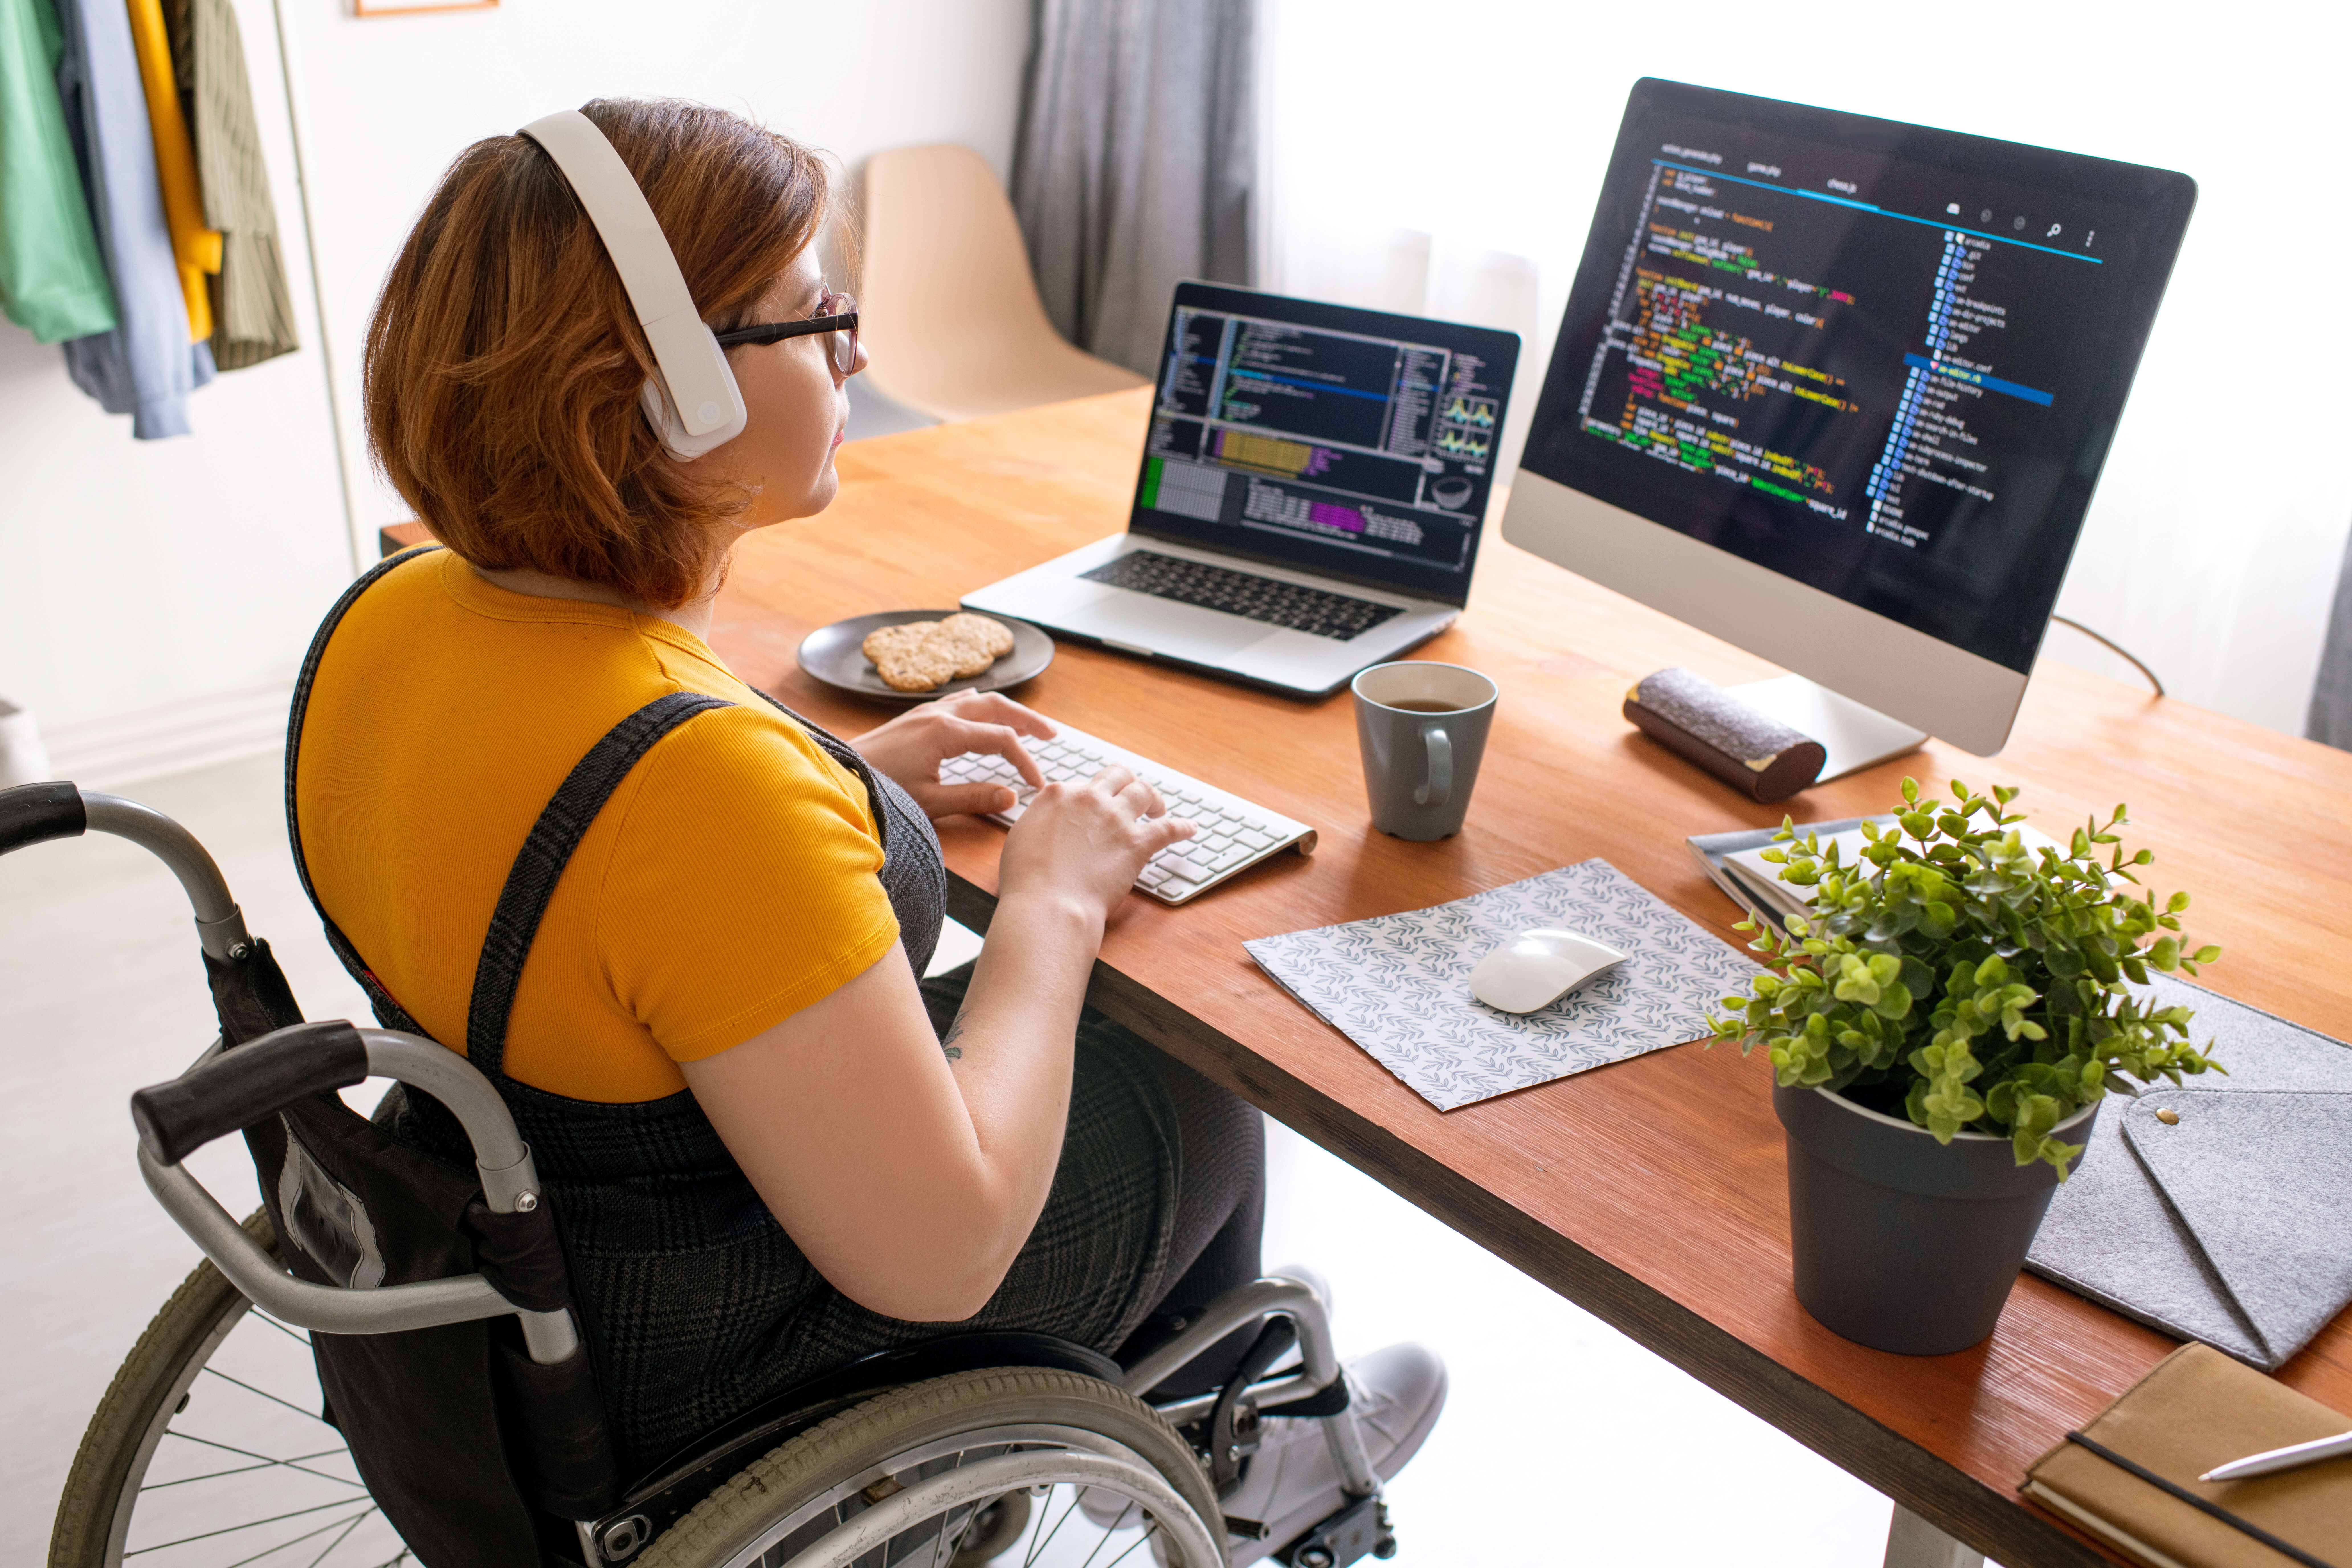 Организация поддержки инвалидов. Компьютер для инвалидов. Людей с ограниченными возможностями компьютер. Рабочее место для людей с ограниченными возможностями. Инвалиды люди с ограниченными возможностями.